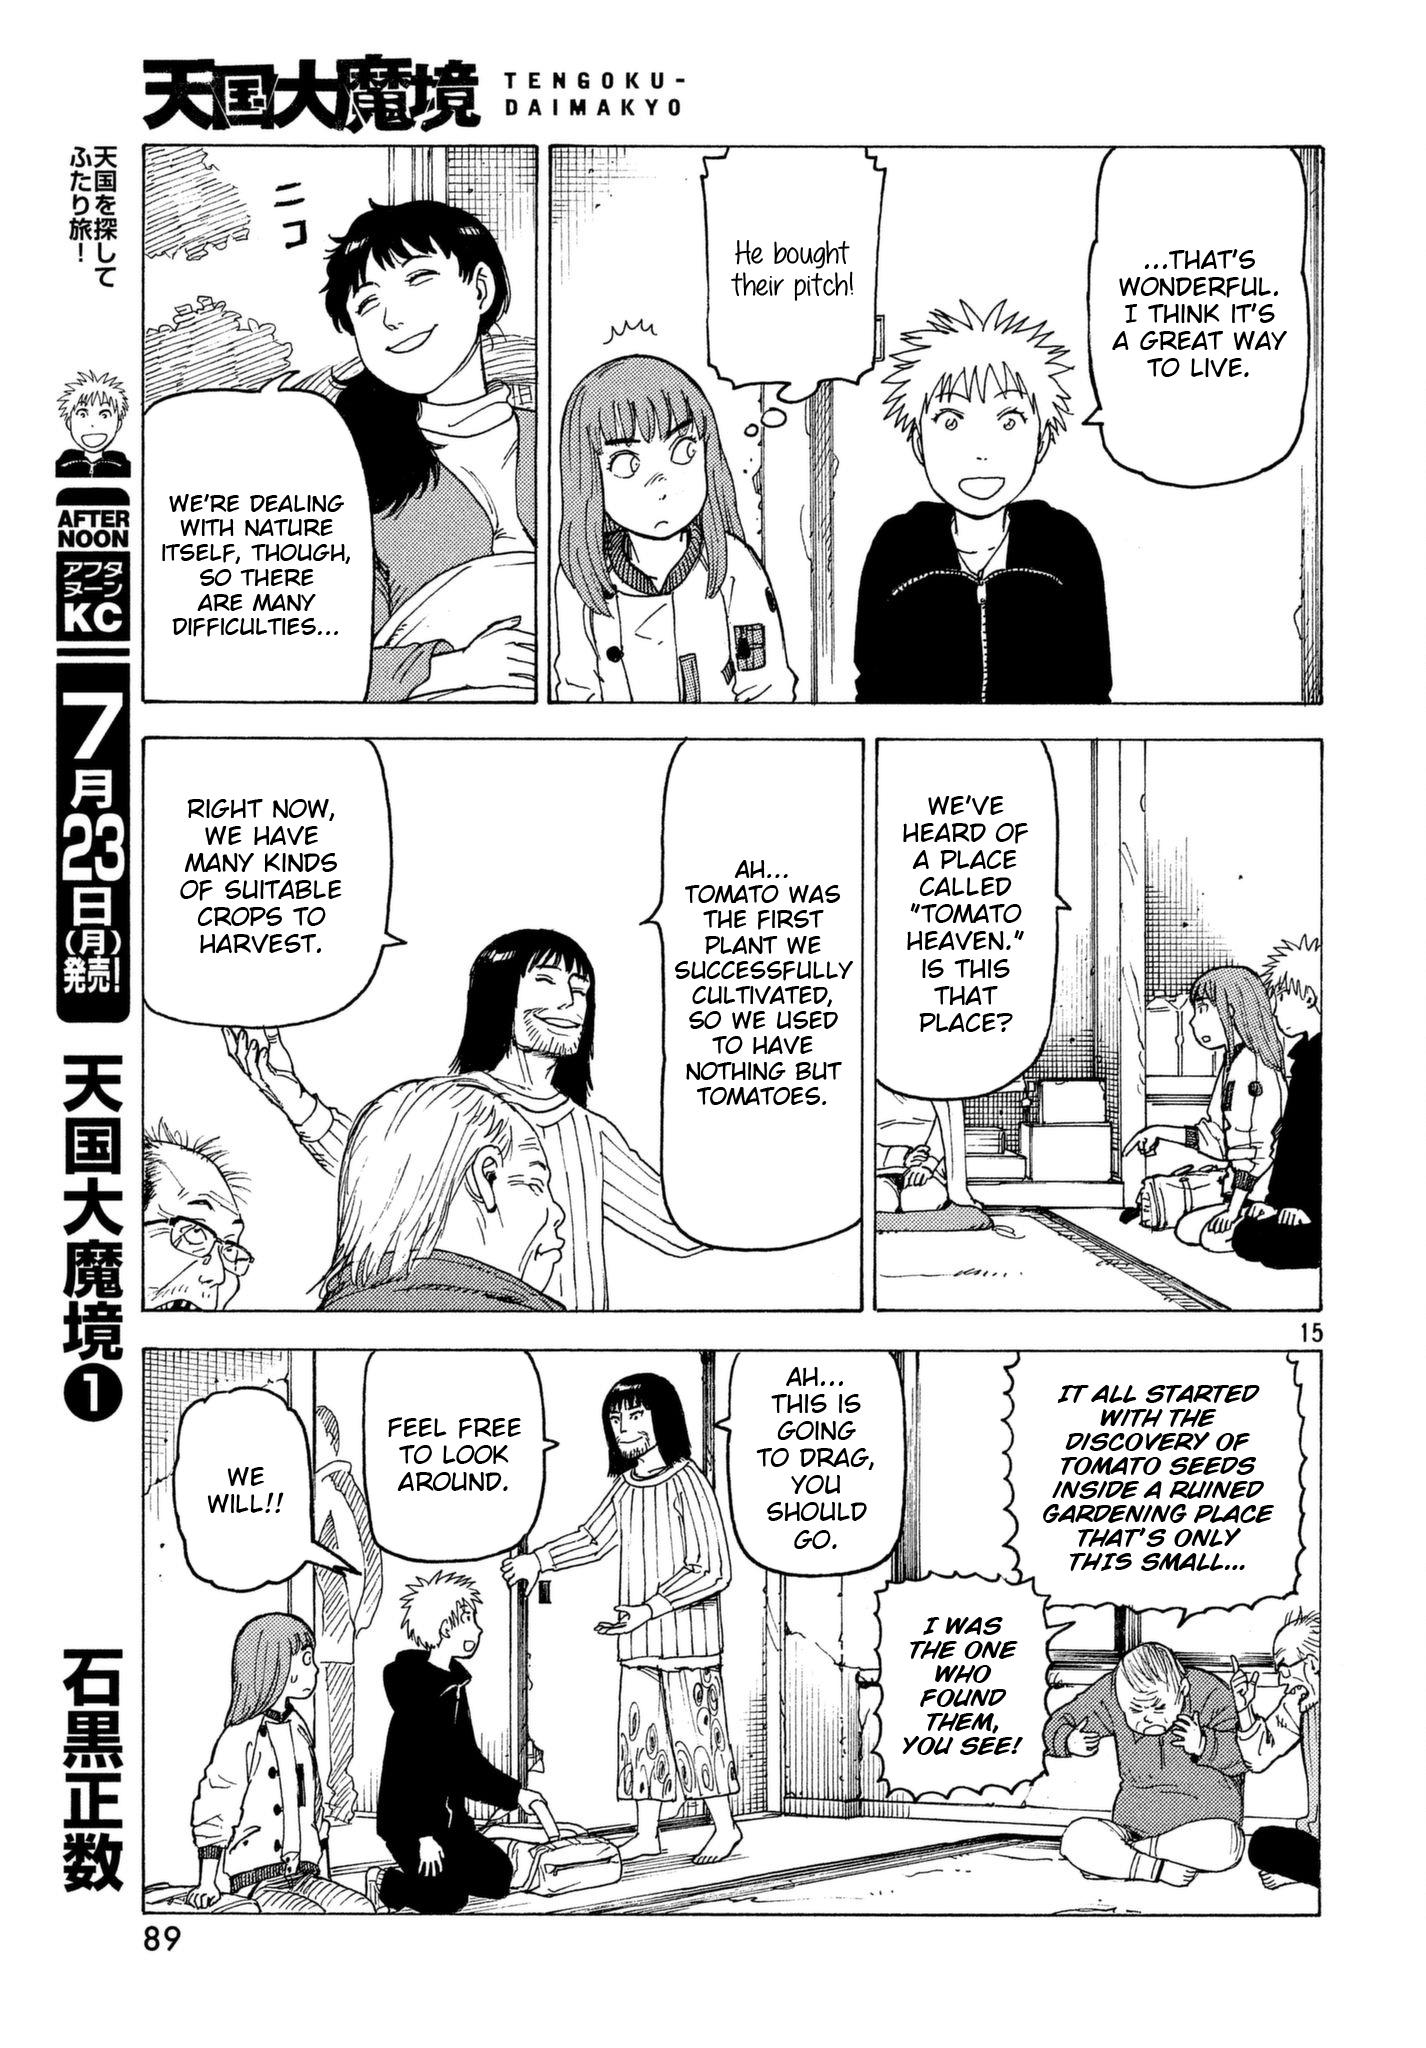 Tengoku Daimakyou Vol.1 Chapter 7: Tomato Heaven page 15 - Mangakakalot